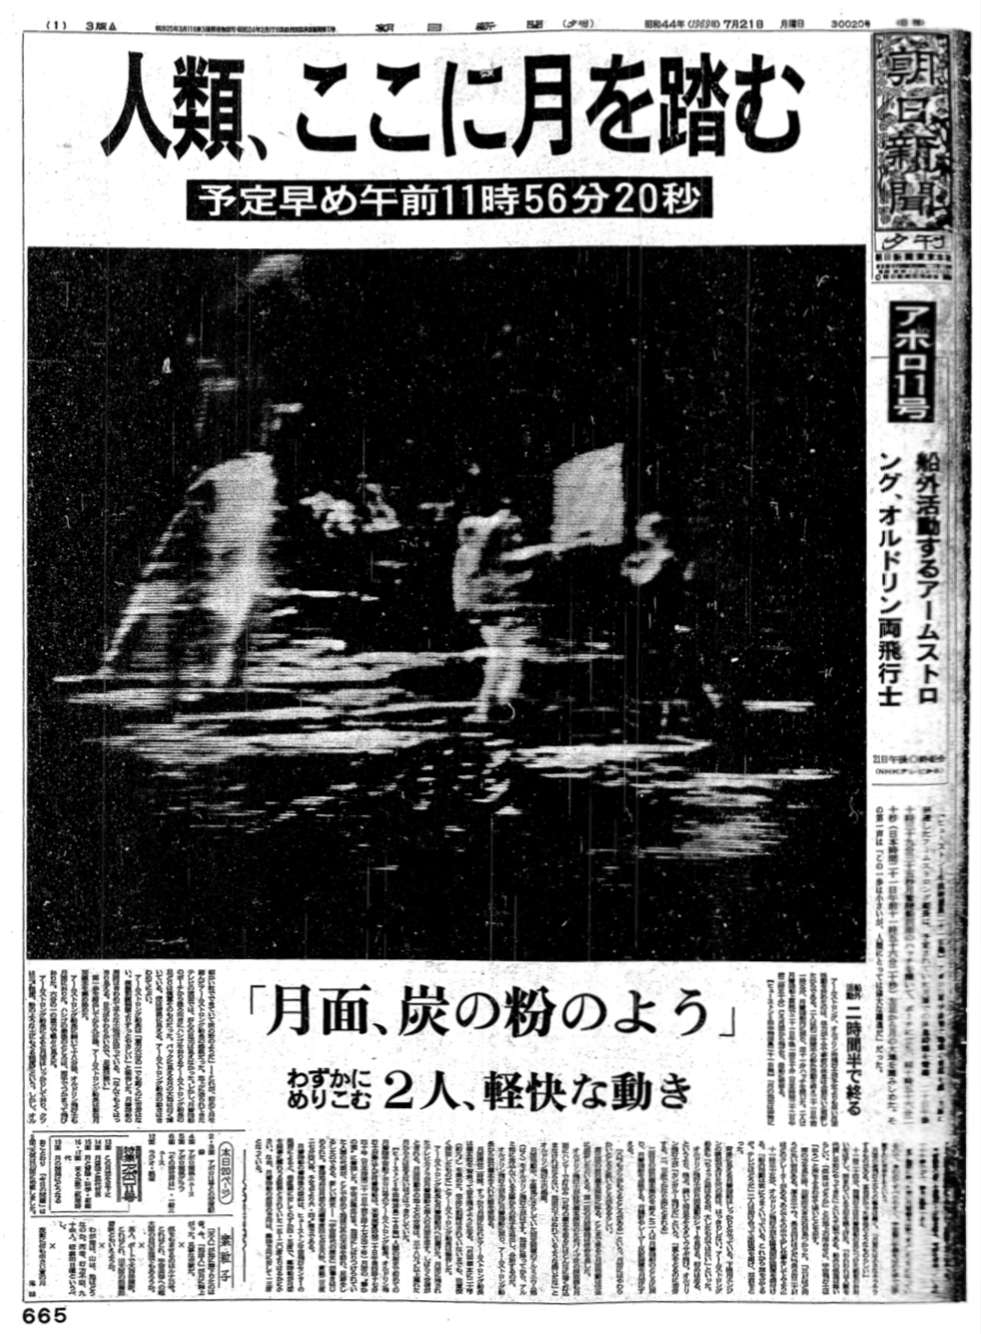 アポロ１１号 月面着陸 記事 信濃毎日新聞 昭和44年 1969年 7月22日 